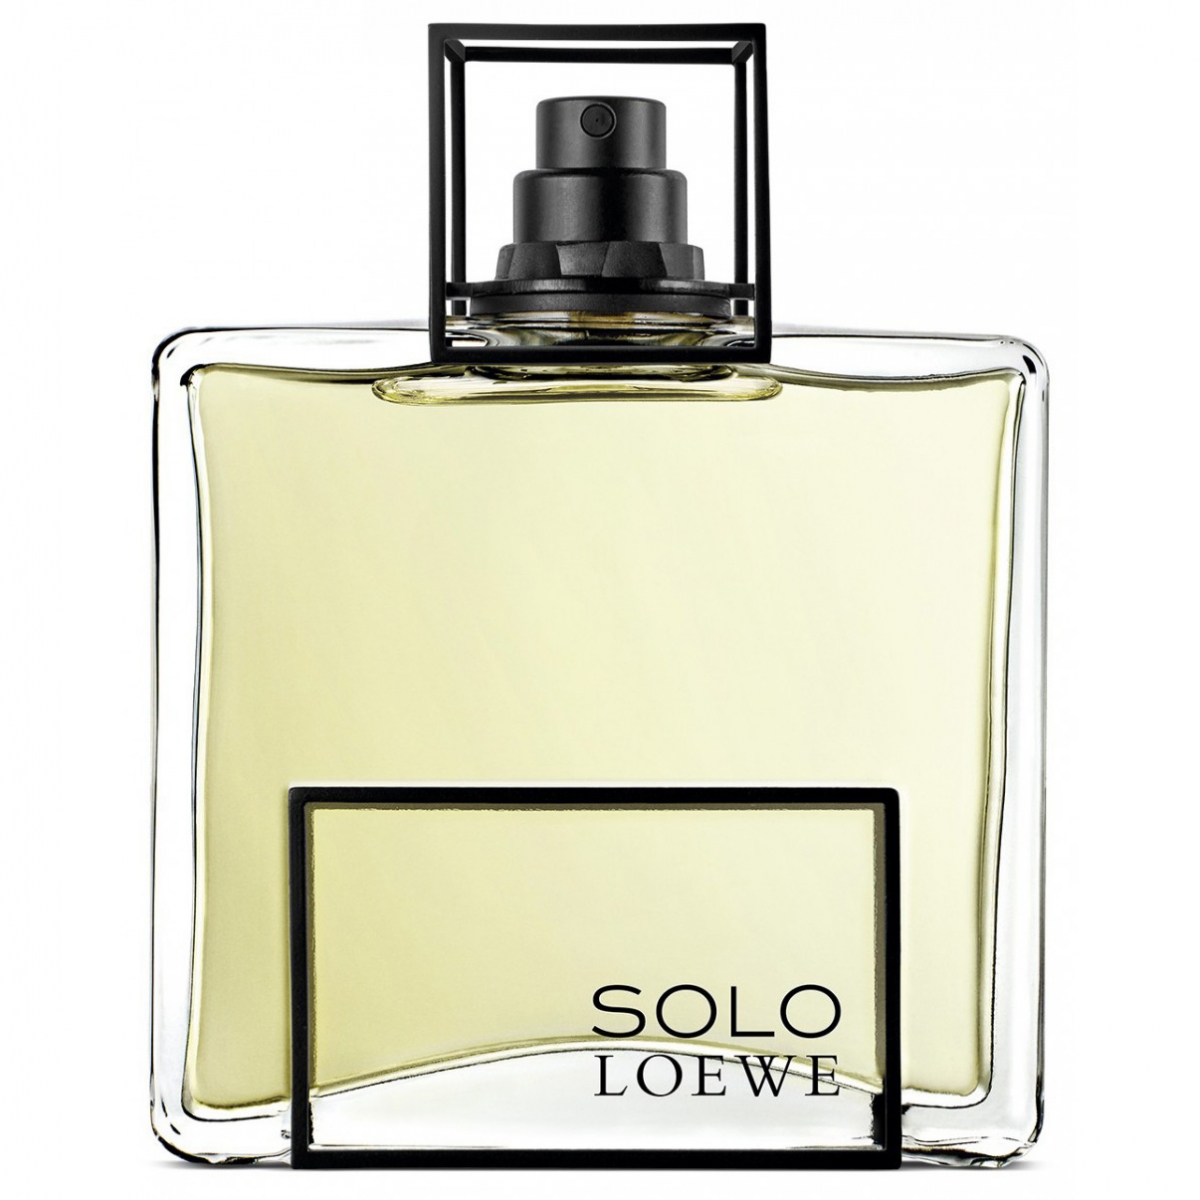 Solo loewe туалетная вода. Мужская туалетная вода solo Loewe. Аромат Loewe soli туалетная. Loewe solo men 100 ml. Solo Loewe мужские 100мл.